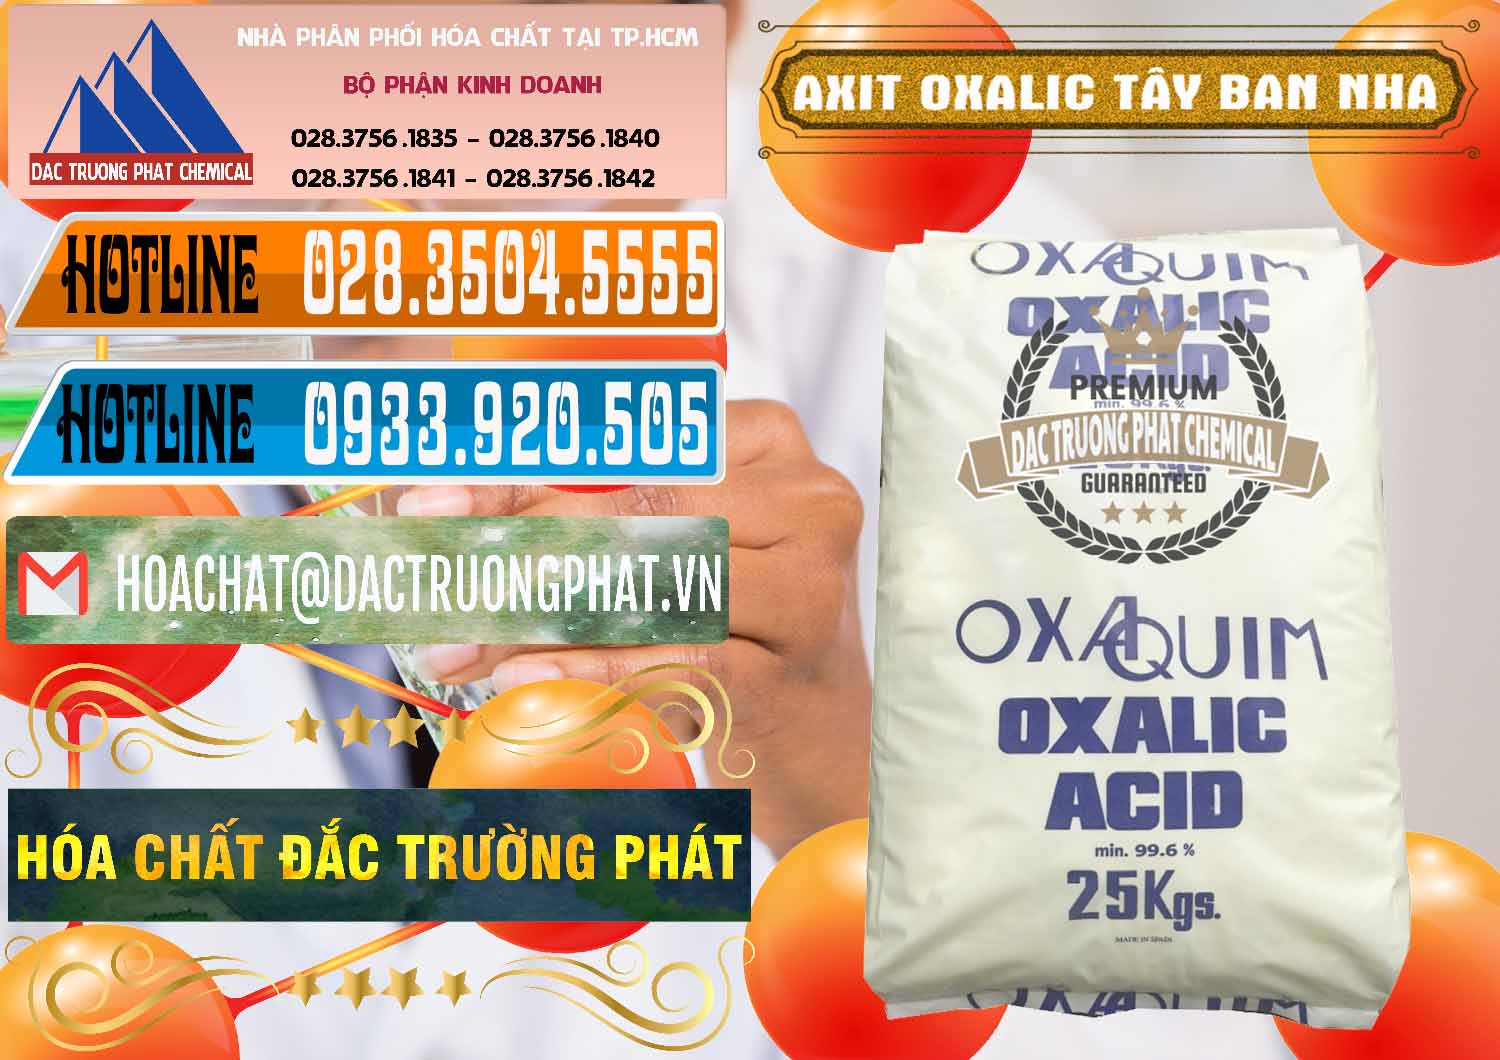 Cty bán _ cung cấp Acid Oxalic – Axit Oxalic 99.6% Tây Ban Nha Spain - 0269 - Nhập khẩu & phân phối hóa chất tại TP.HCM - stmp.net